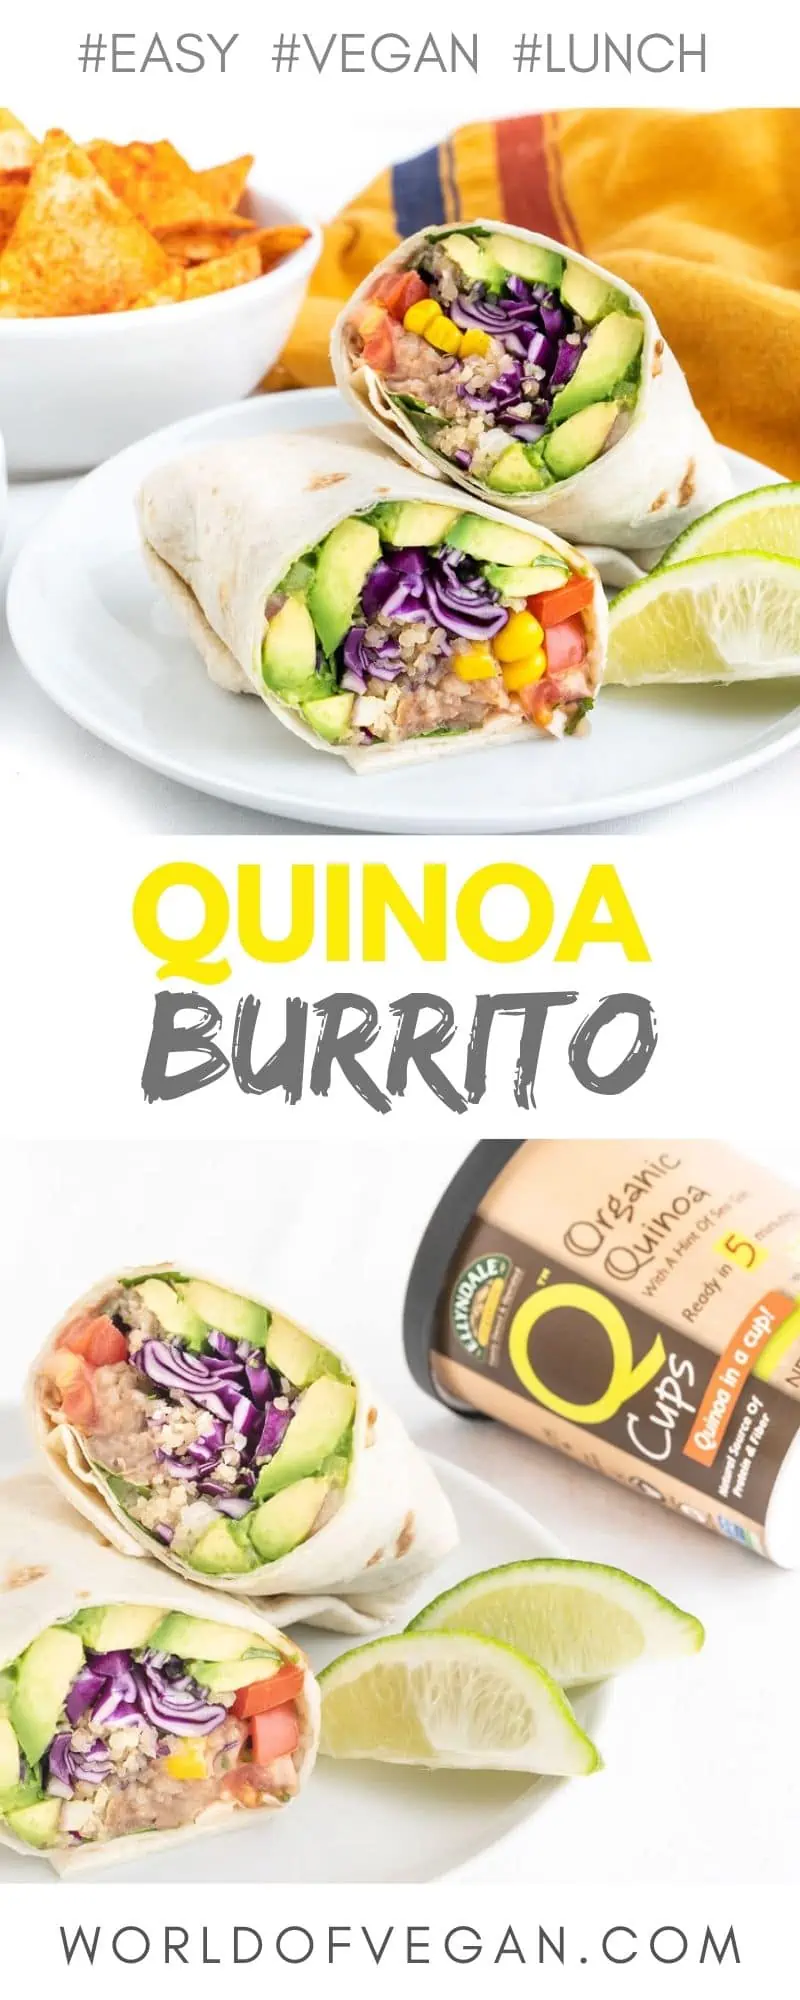 Easy Vegan Burrito | WorldofVegan.com #vegan #vegetarian #healthy #lunch #burrito #mexican